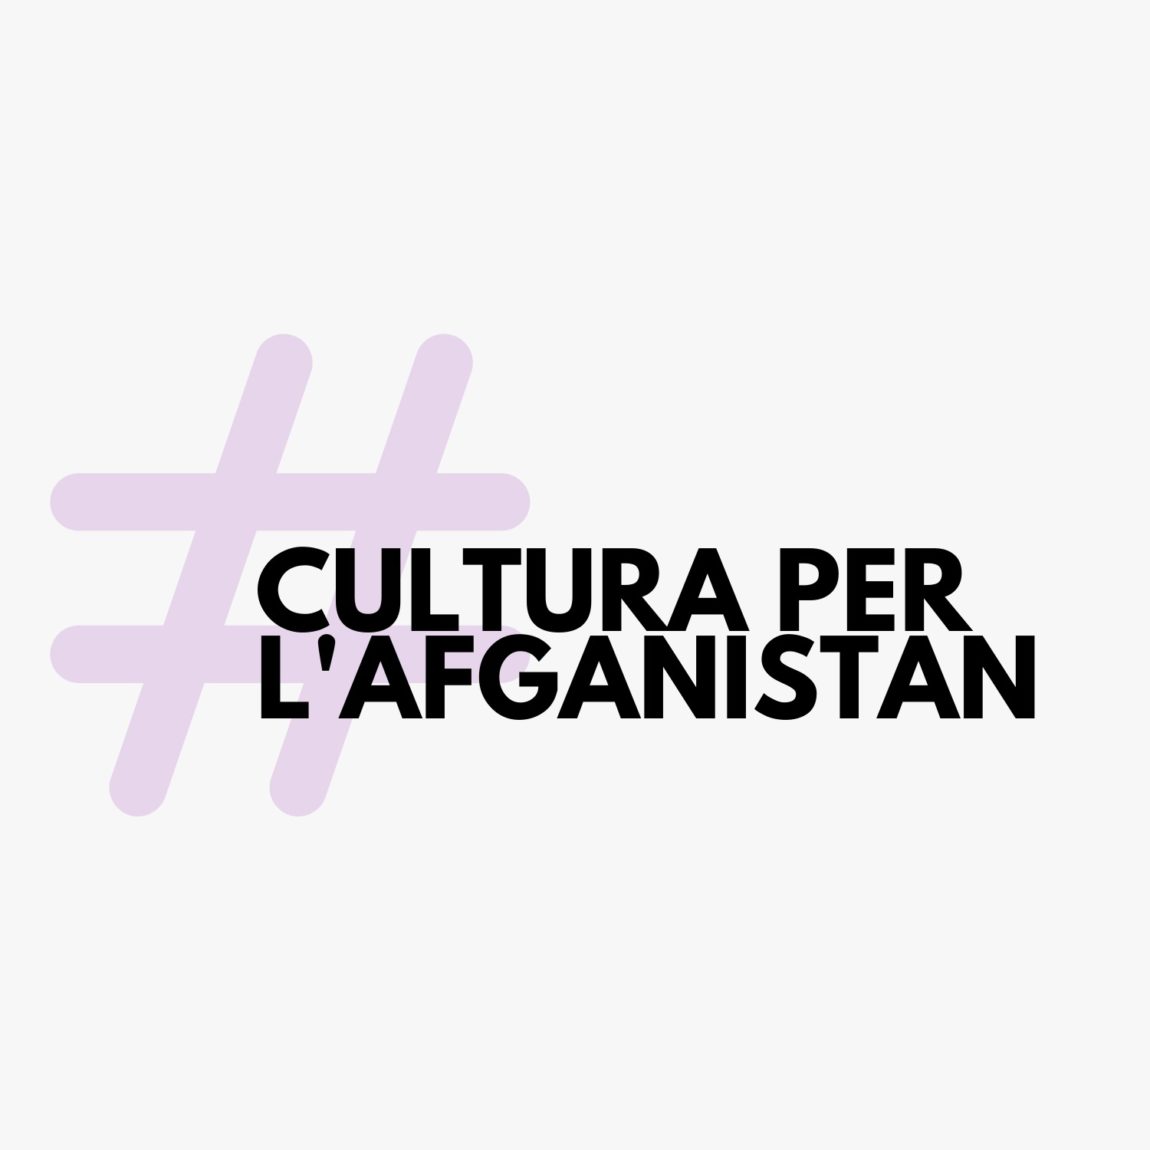 La Federació d’Ateneus s’adhereix al manifest “Cultura per l’Afganistan”